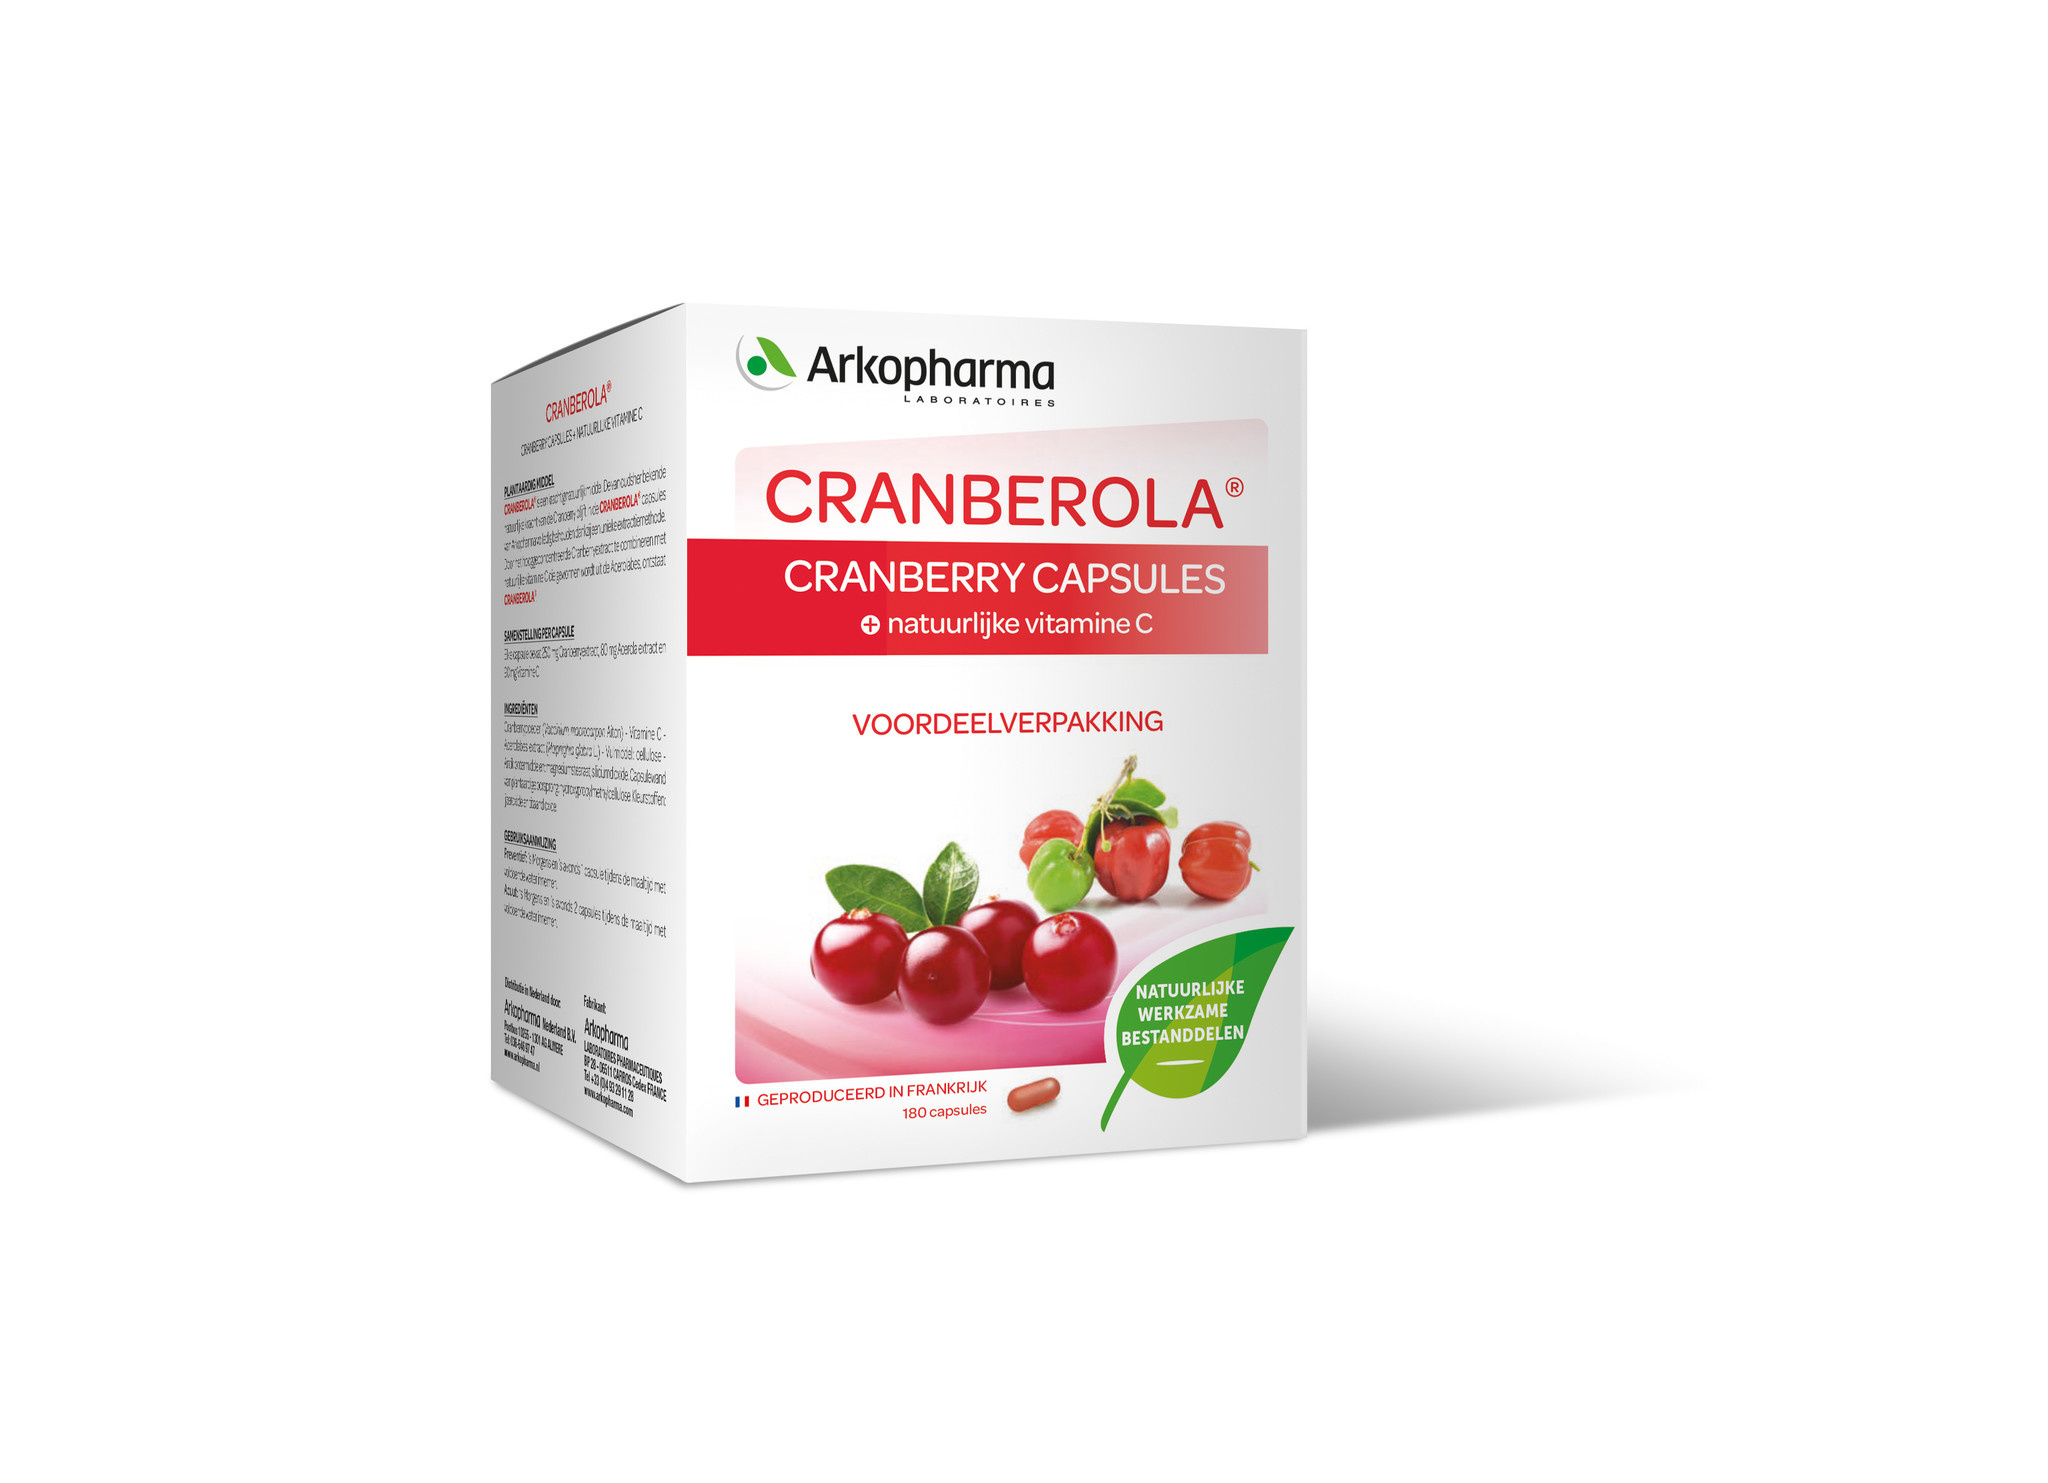 Arkopharma Arkopharma Cranberola Cranberry caps (180 vcaps)